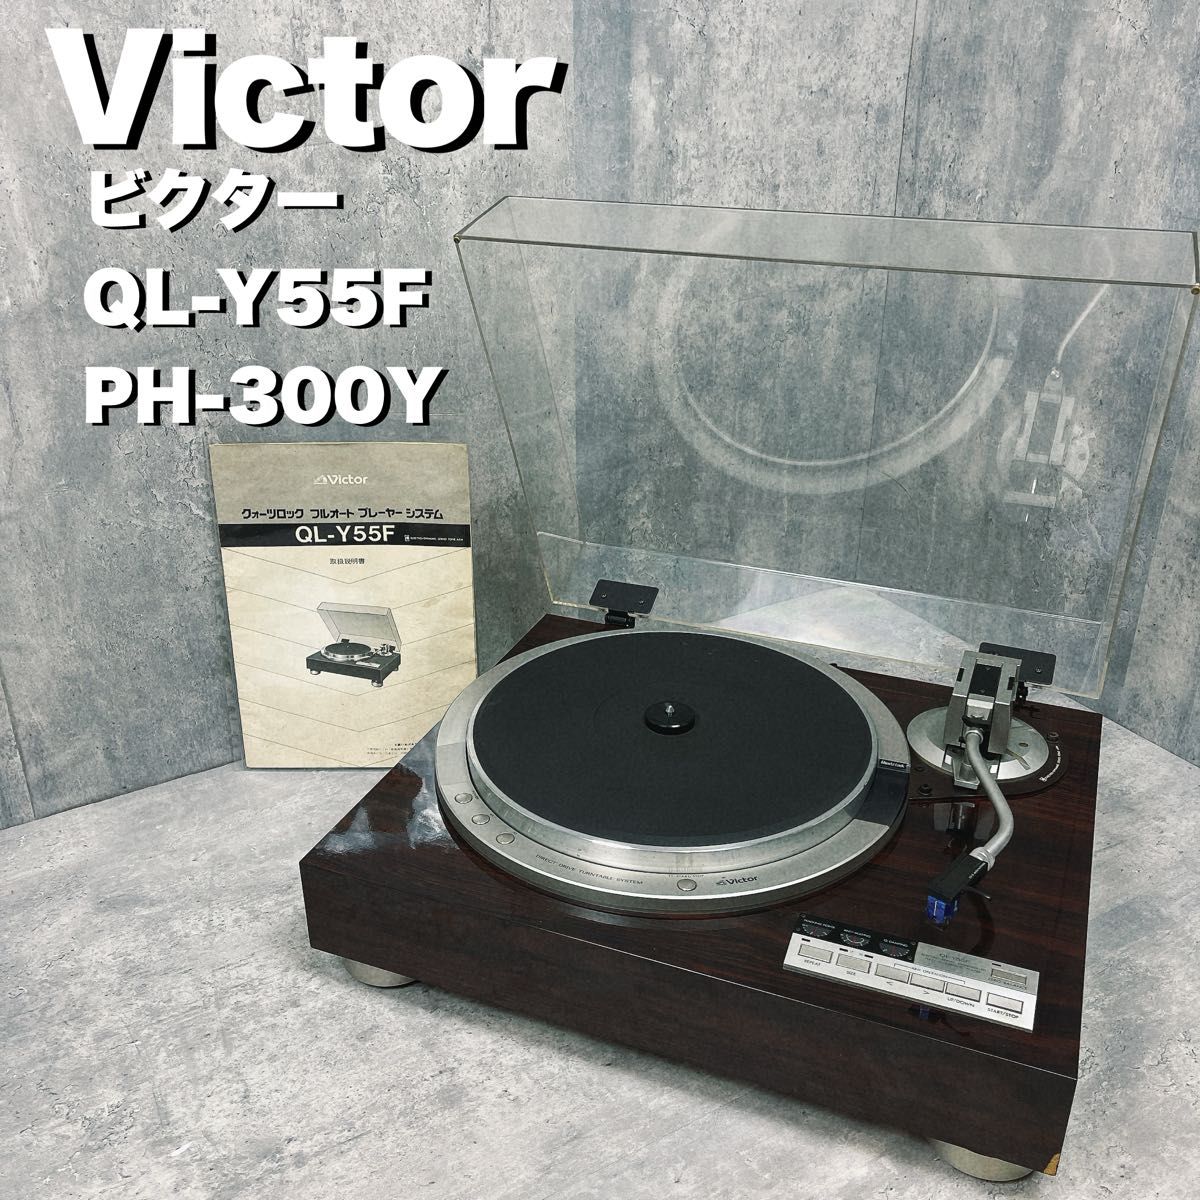 Victor ビクター　レコードプレーヤー　QL-Y55F PH-300Y audio-technica LS-12 年代物